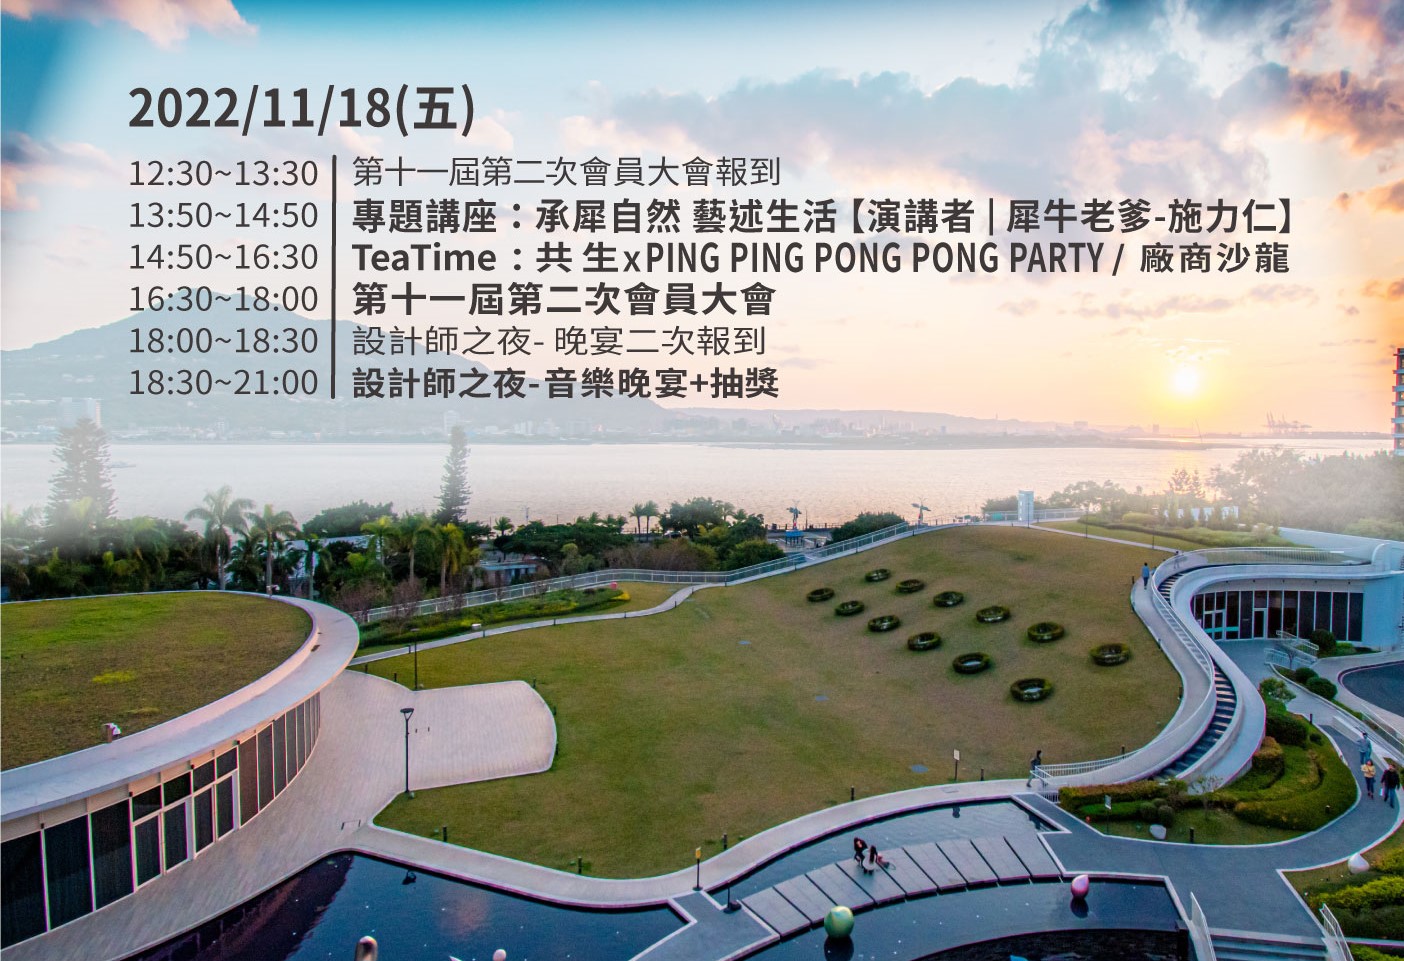 台灣室內設計專技協會；TnAID；會員大會；台灣室內設計週；共生